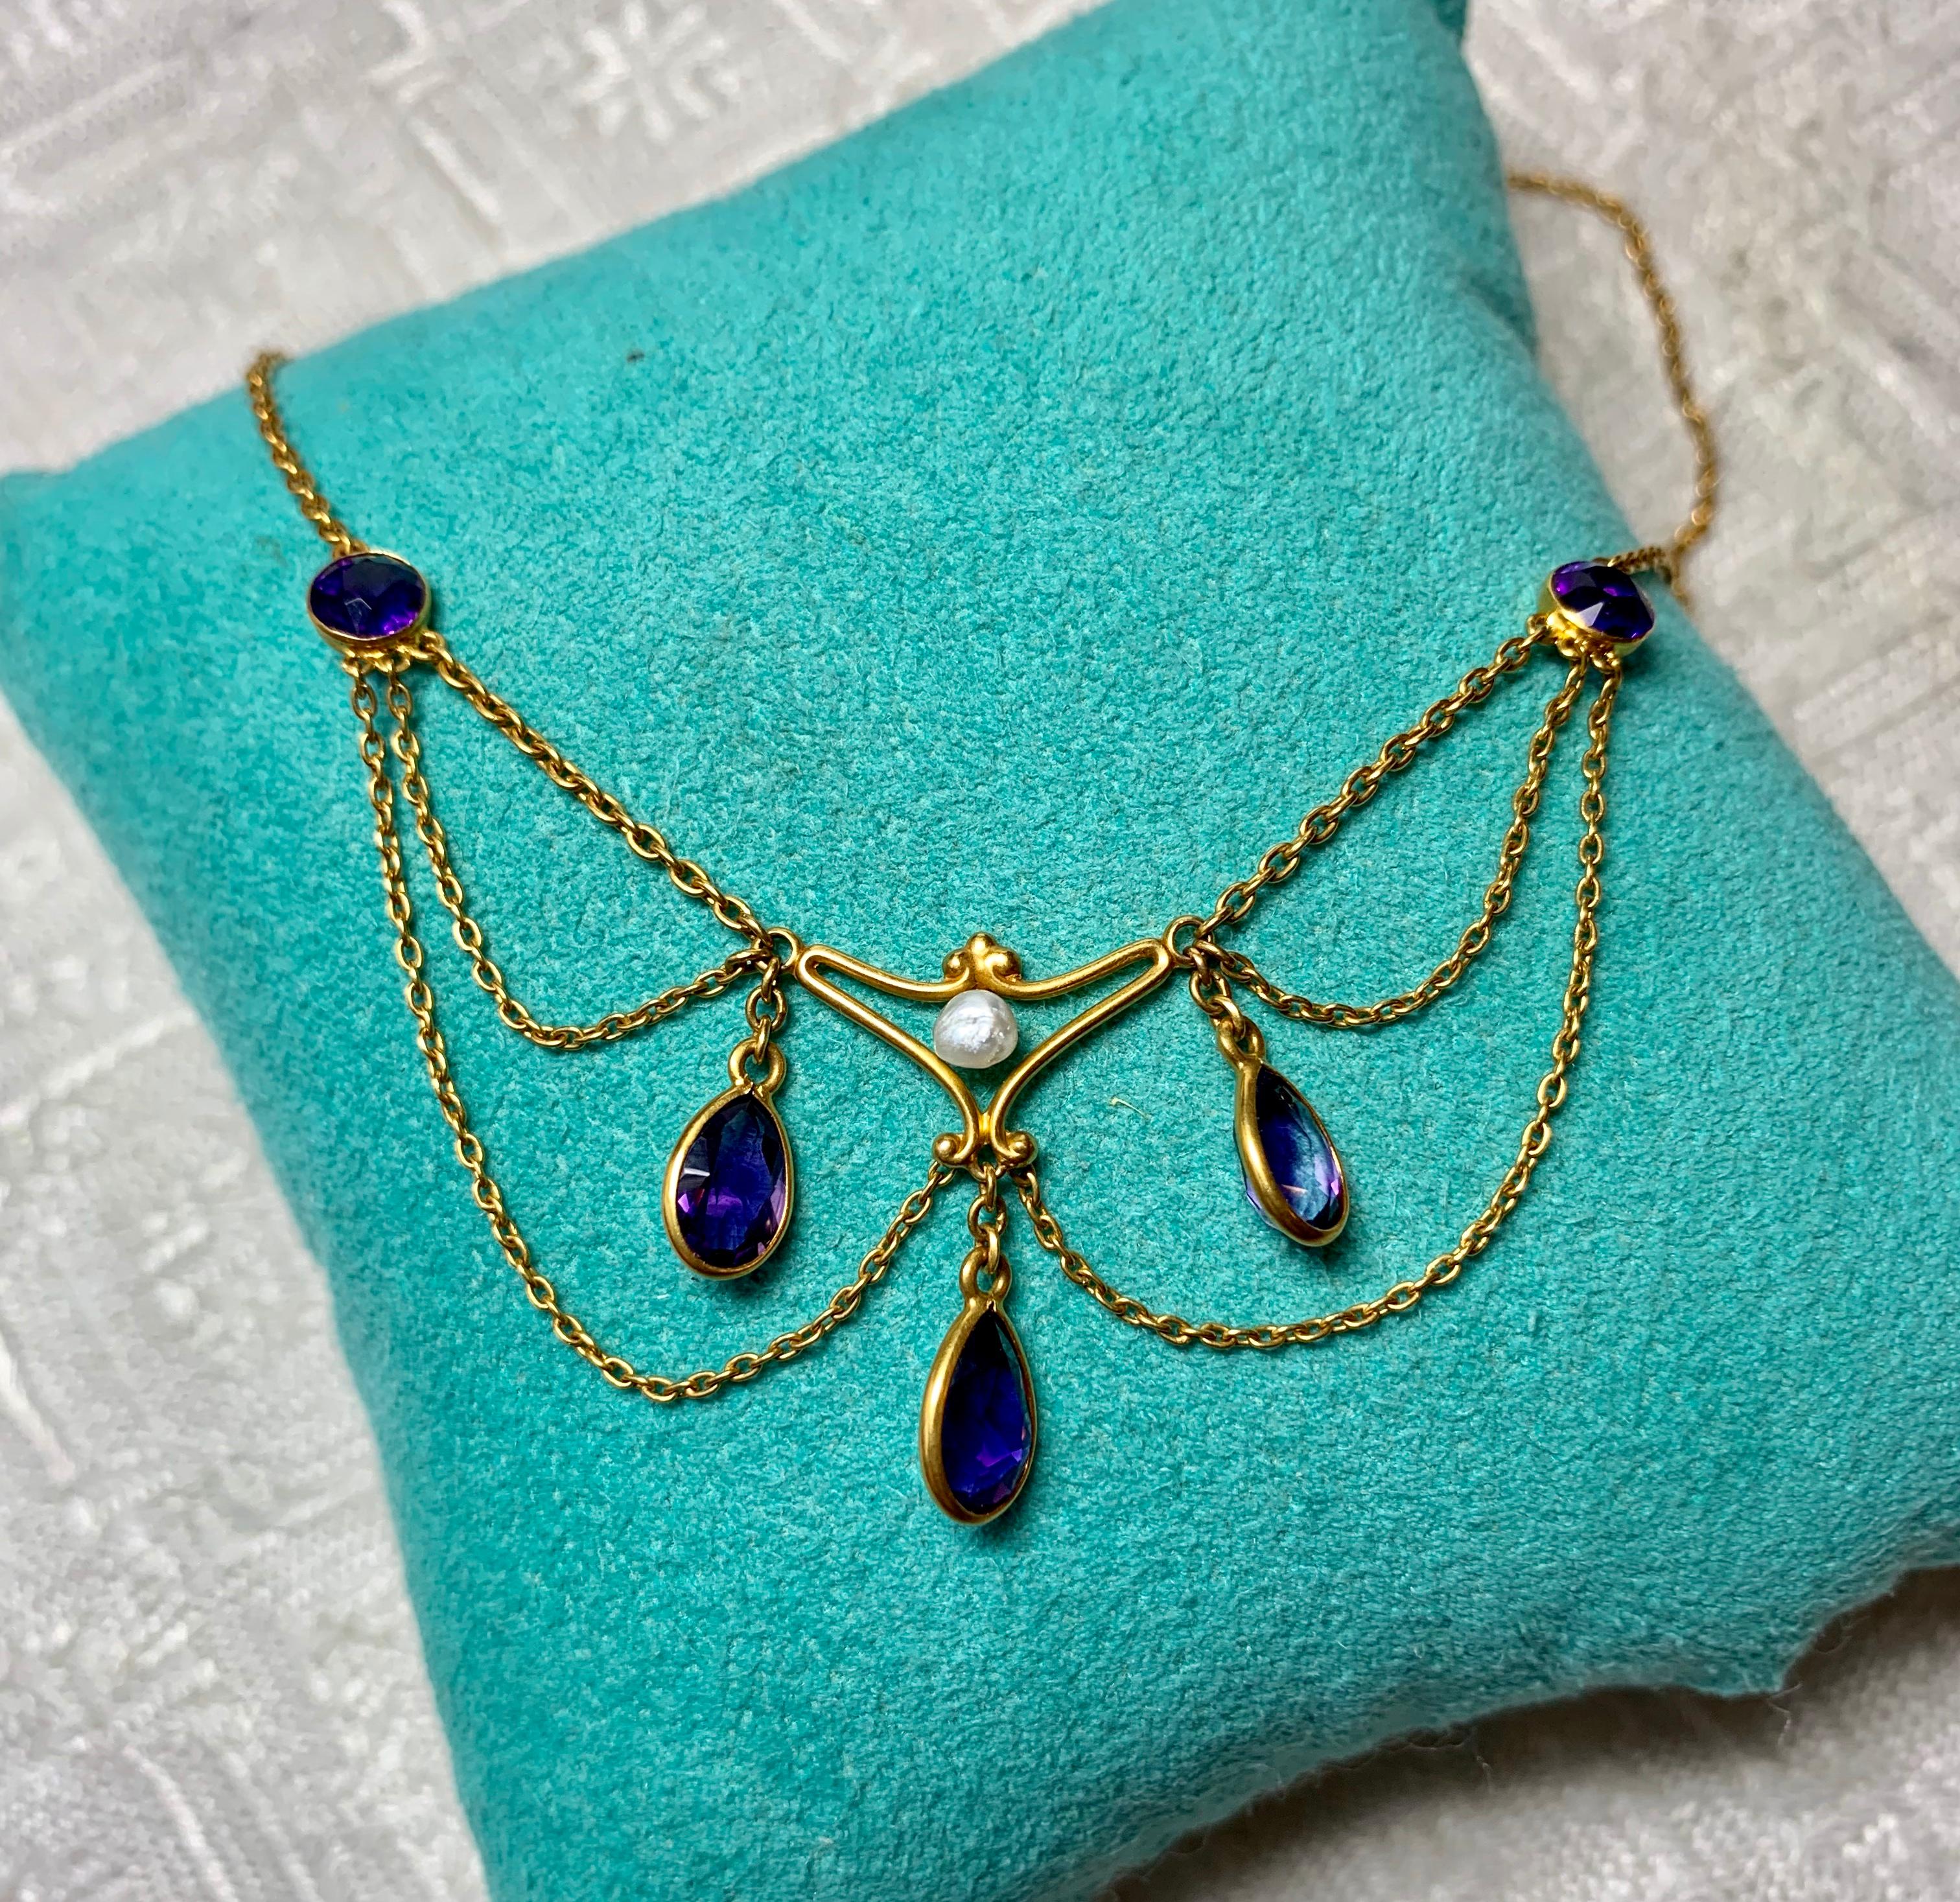 Eine atemberaubende antike viktorianische - edwardianische Girlande Halskette mit den herrlichsten Edelstein Qualität sibirischen Amethysten in schönen 14 Karat Gold mit einer barocken Perle Akzent gesetzt.  Die antike Halskette stammt aus der Zeit